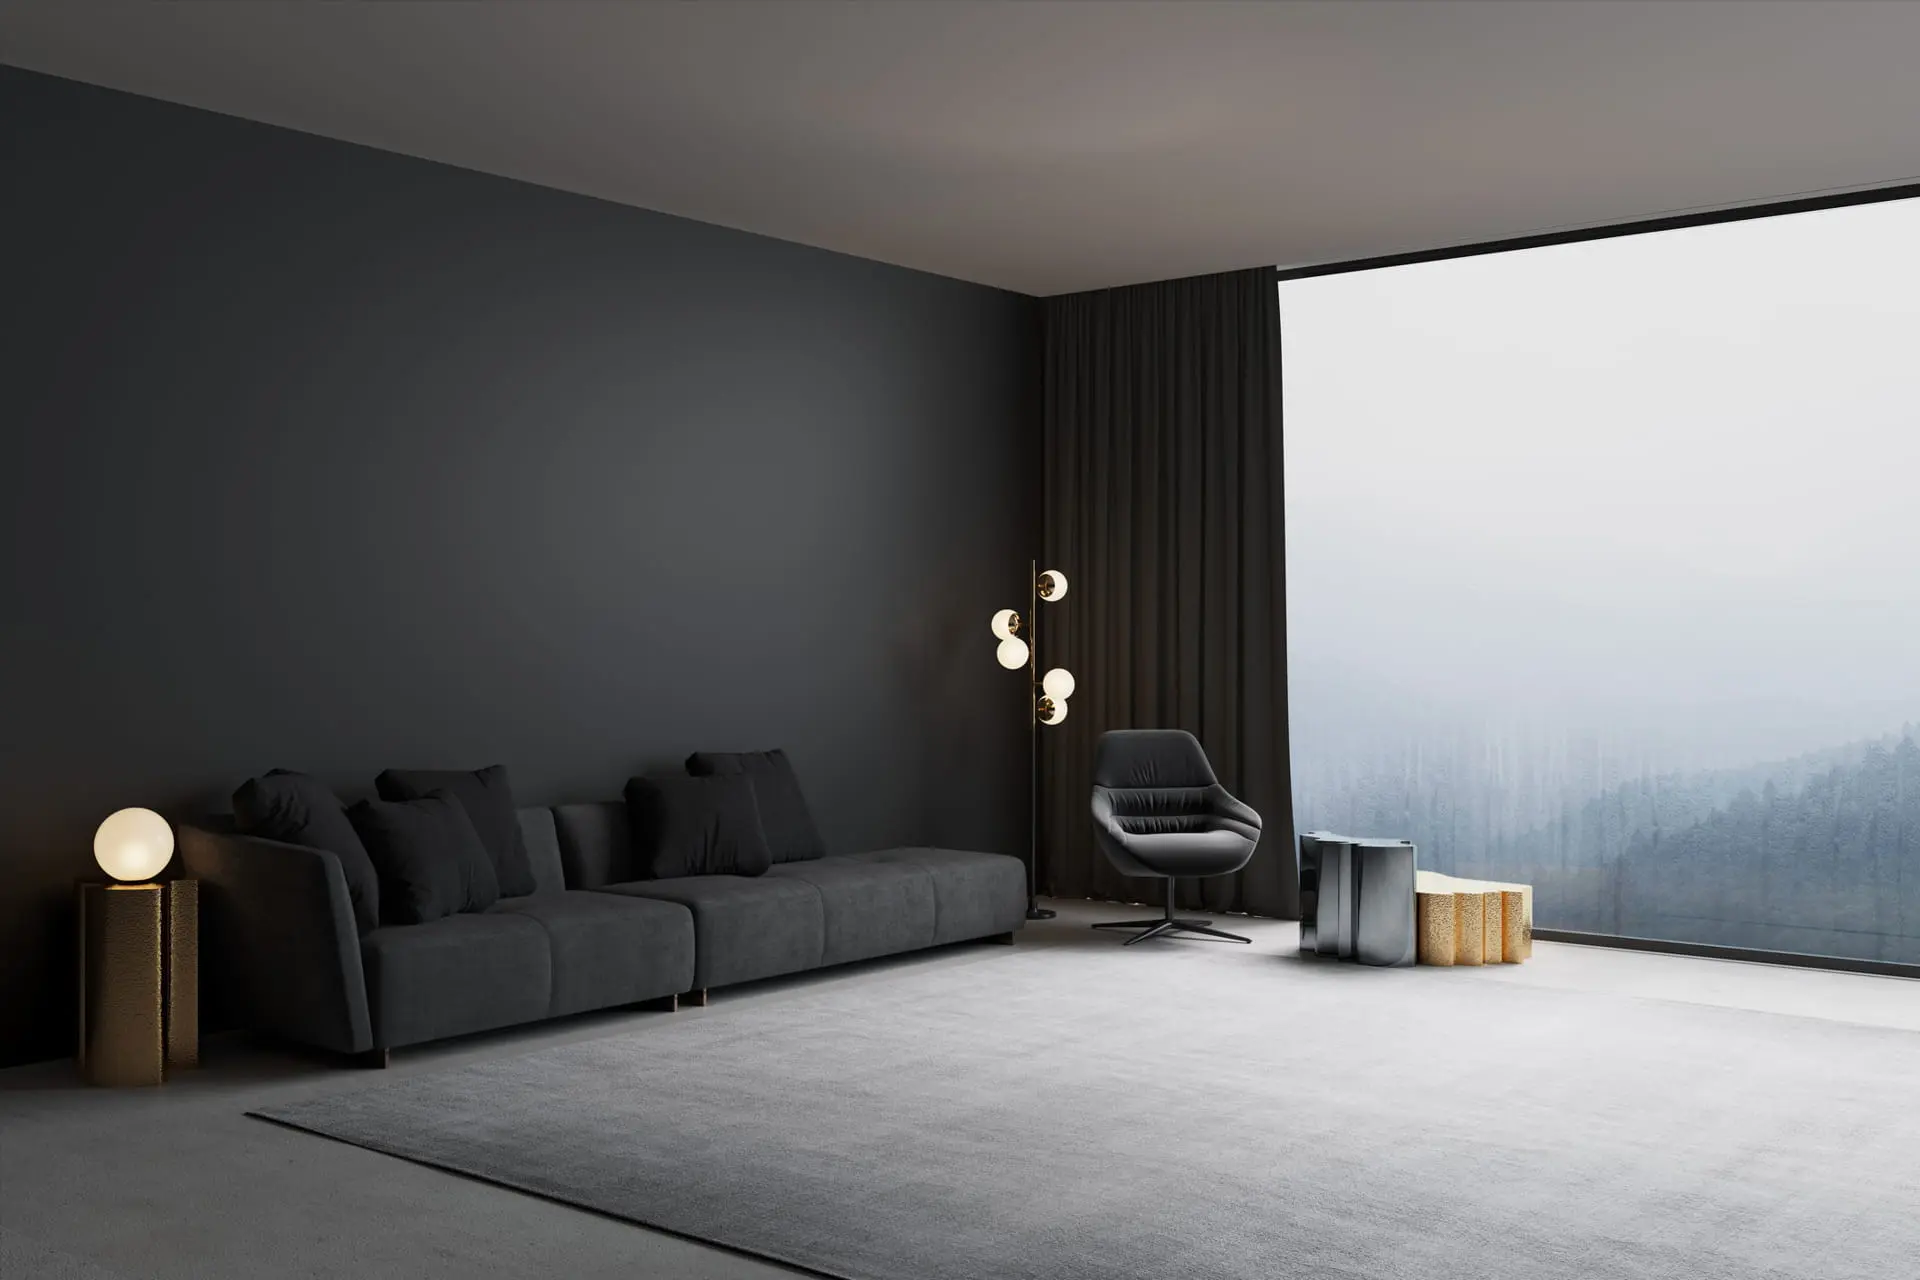 Modernt vardagsrum dekorerat med mörkfärgad microcement